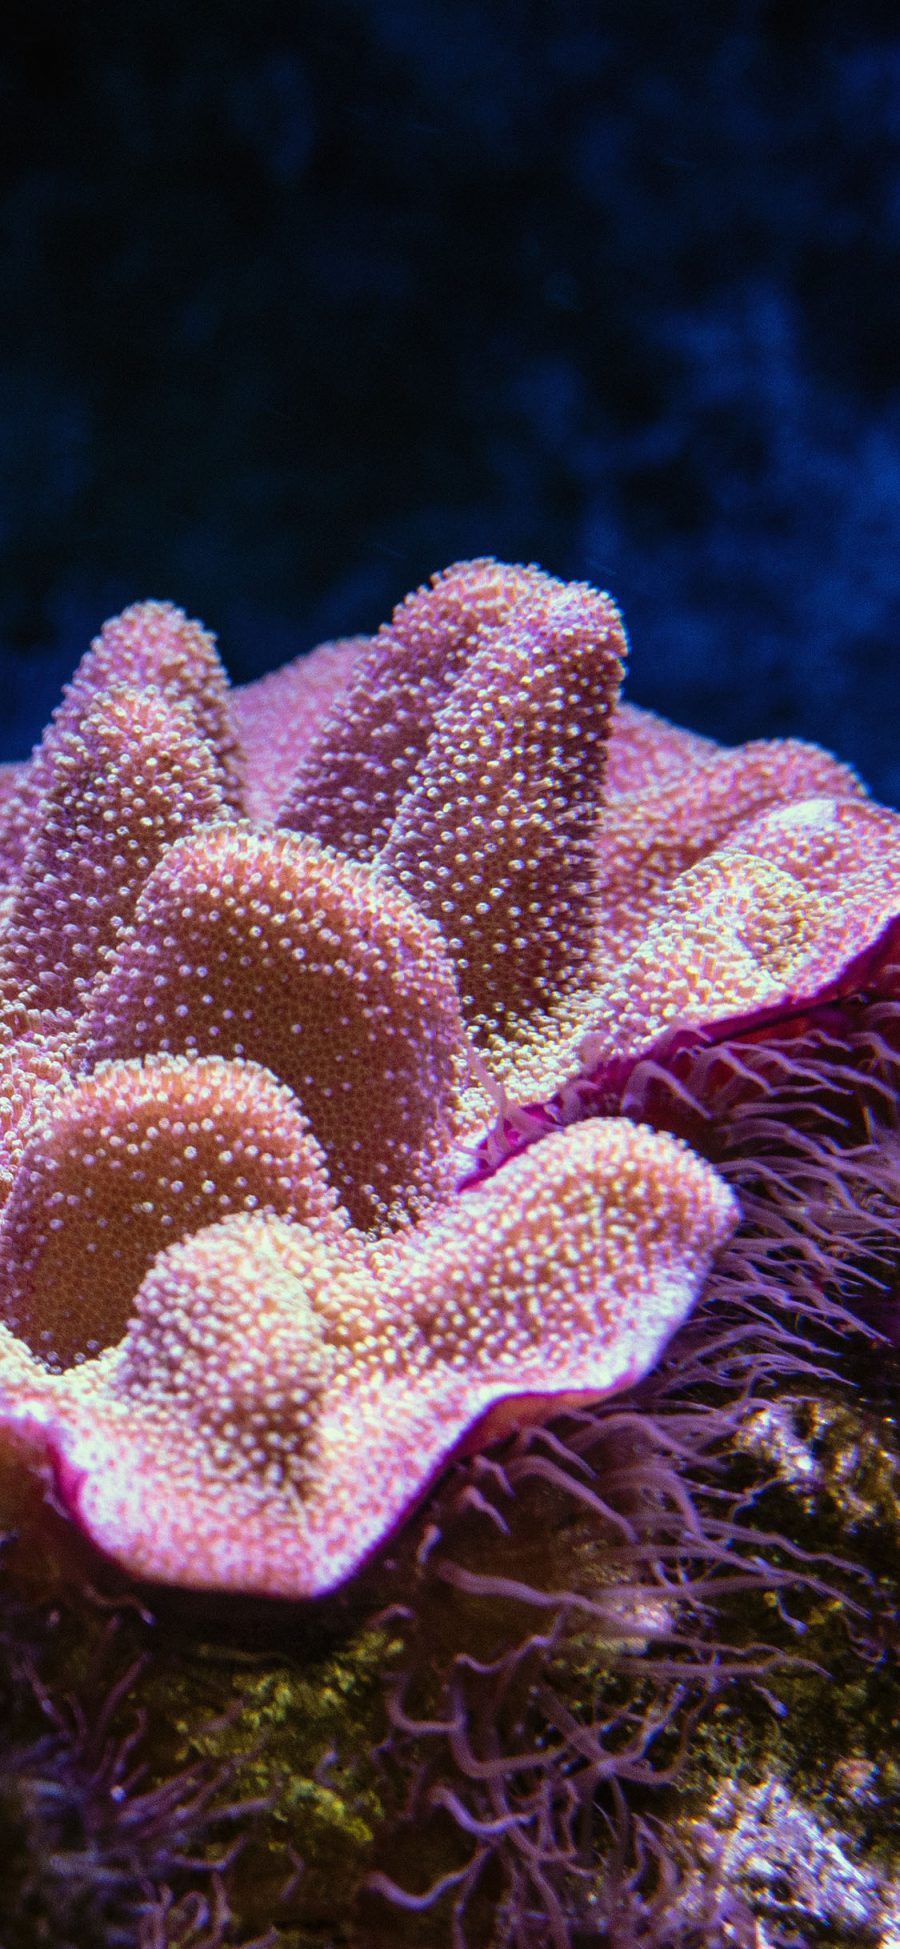 [2436×1125]珊瑚 海底 珊瑚虫 海洋 苹果手机壁纸图片